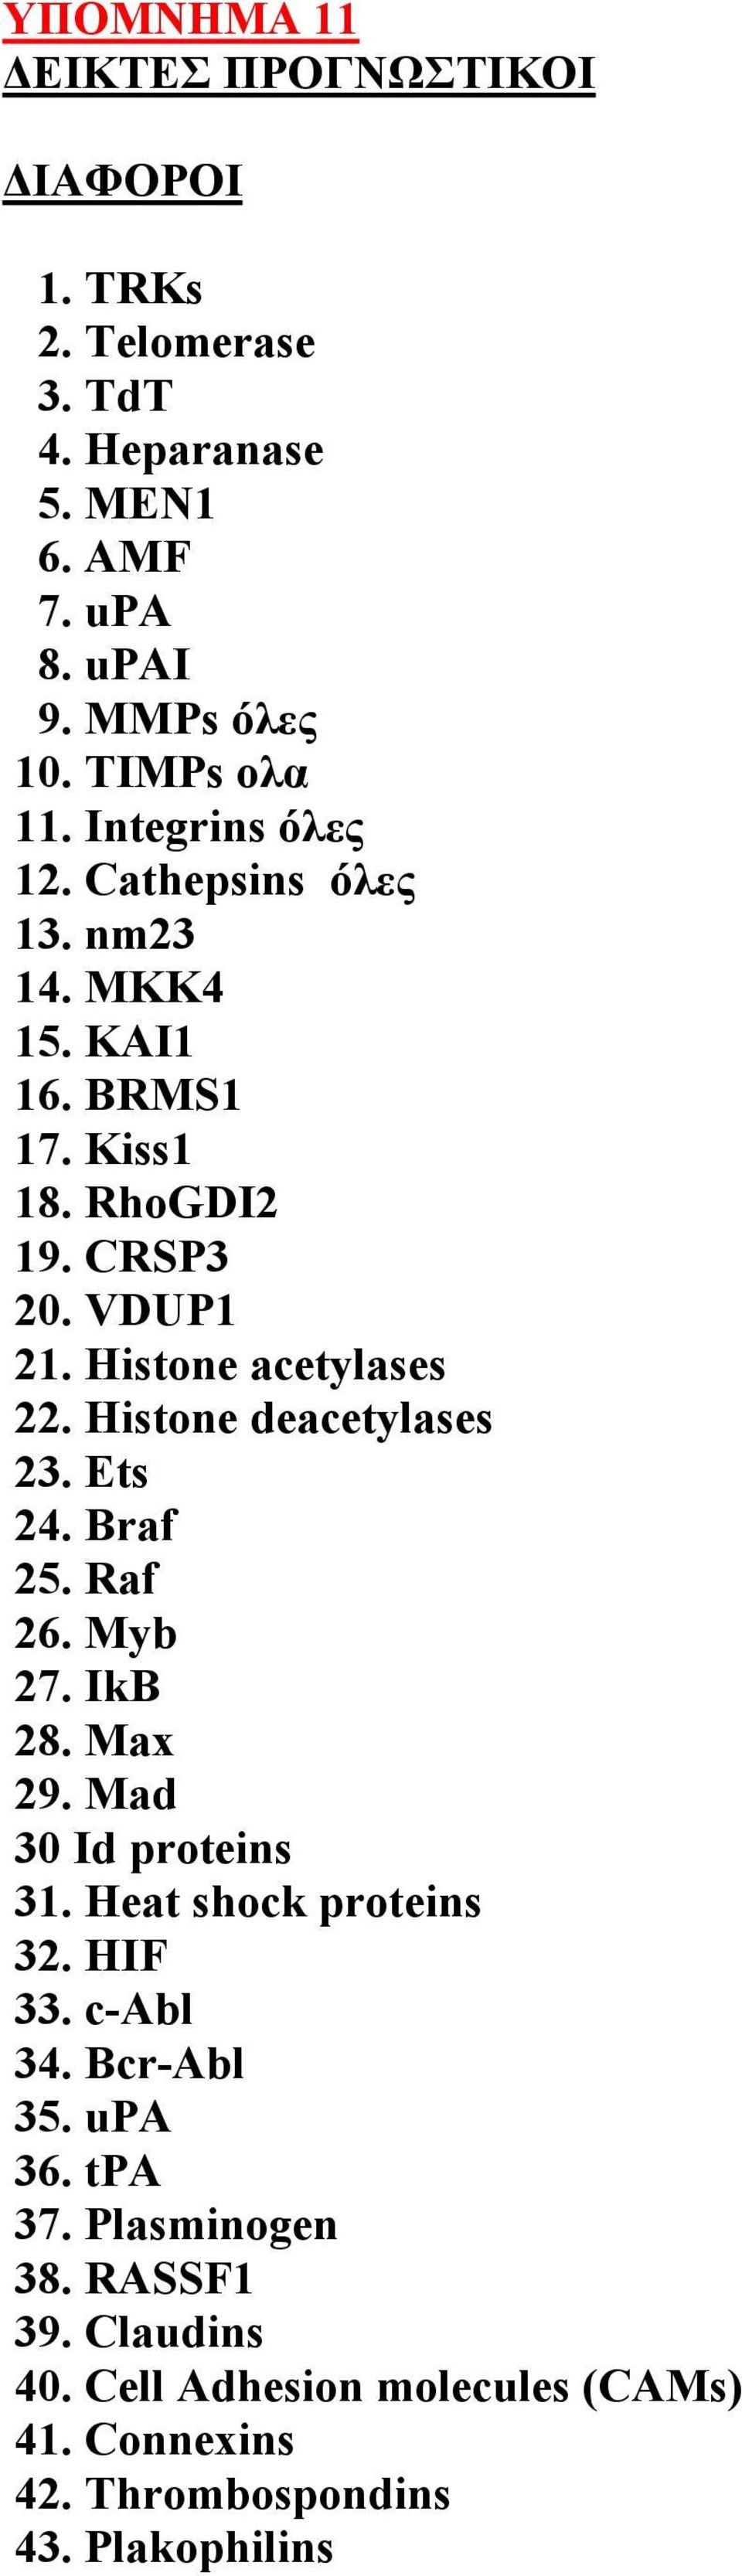 Histone deacetylases 23. Ets 24. Braf 25. Raf 26. Myb 27. IkB 28. Max 29. Mad 30 Id proteins 31. Heat shock proteins 32. HIF 33. c-abl 34.